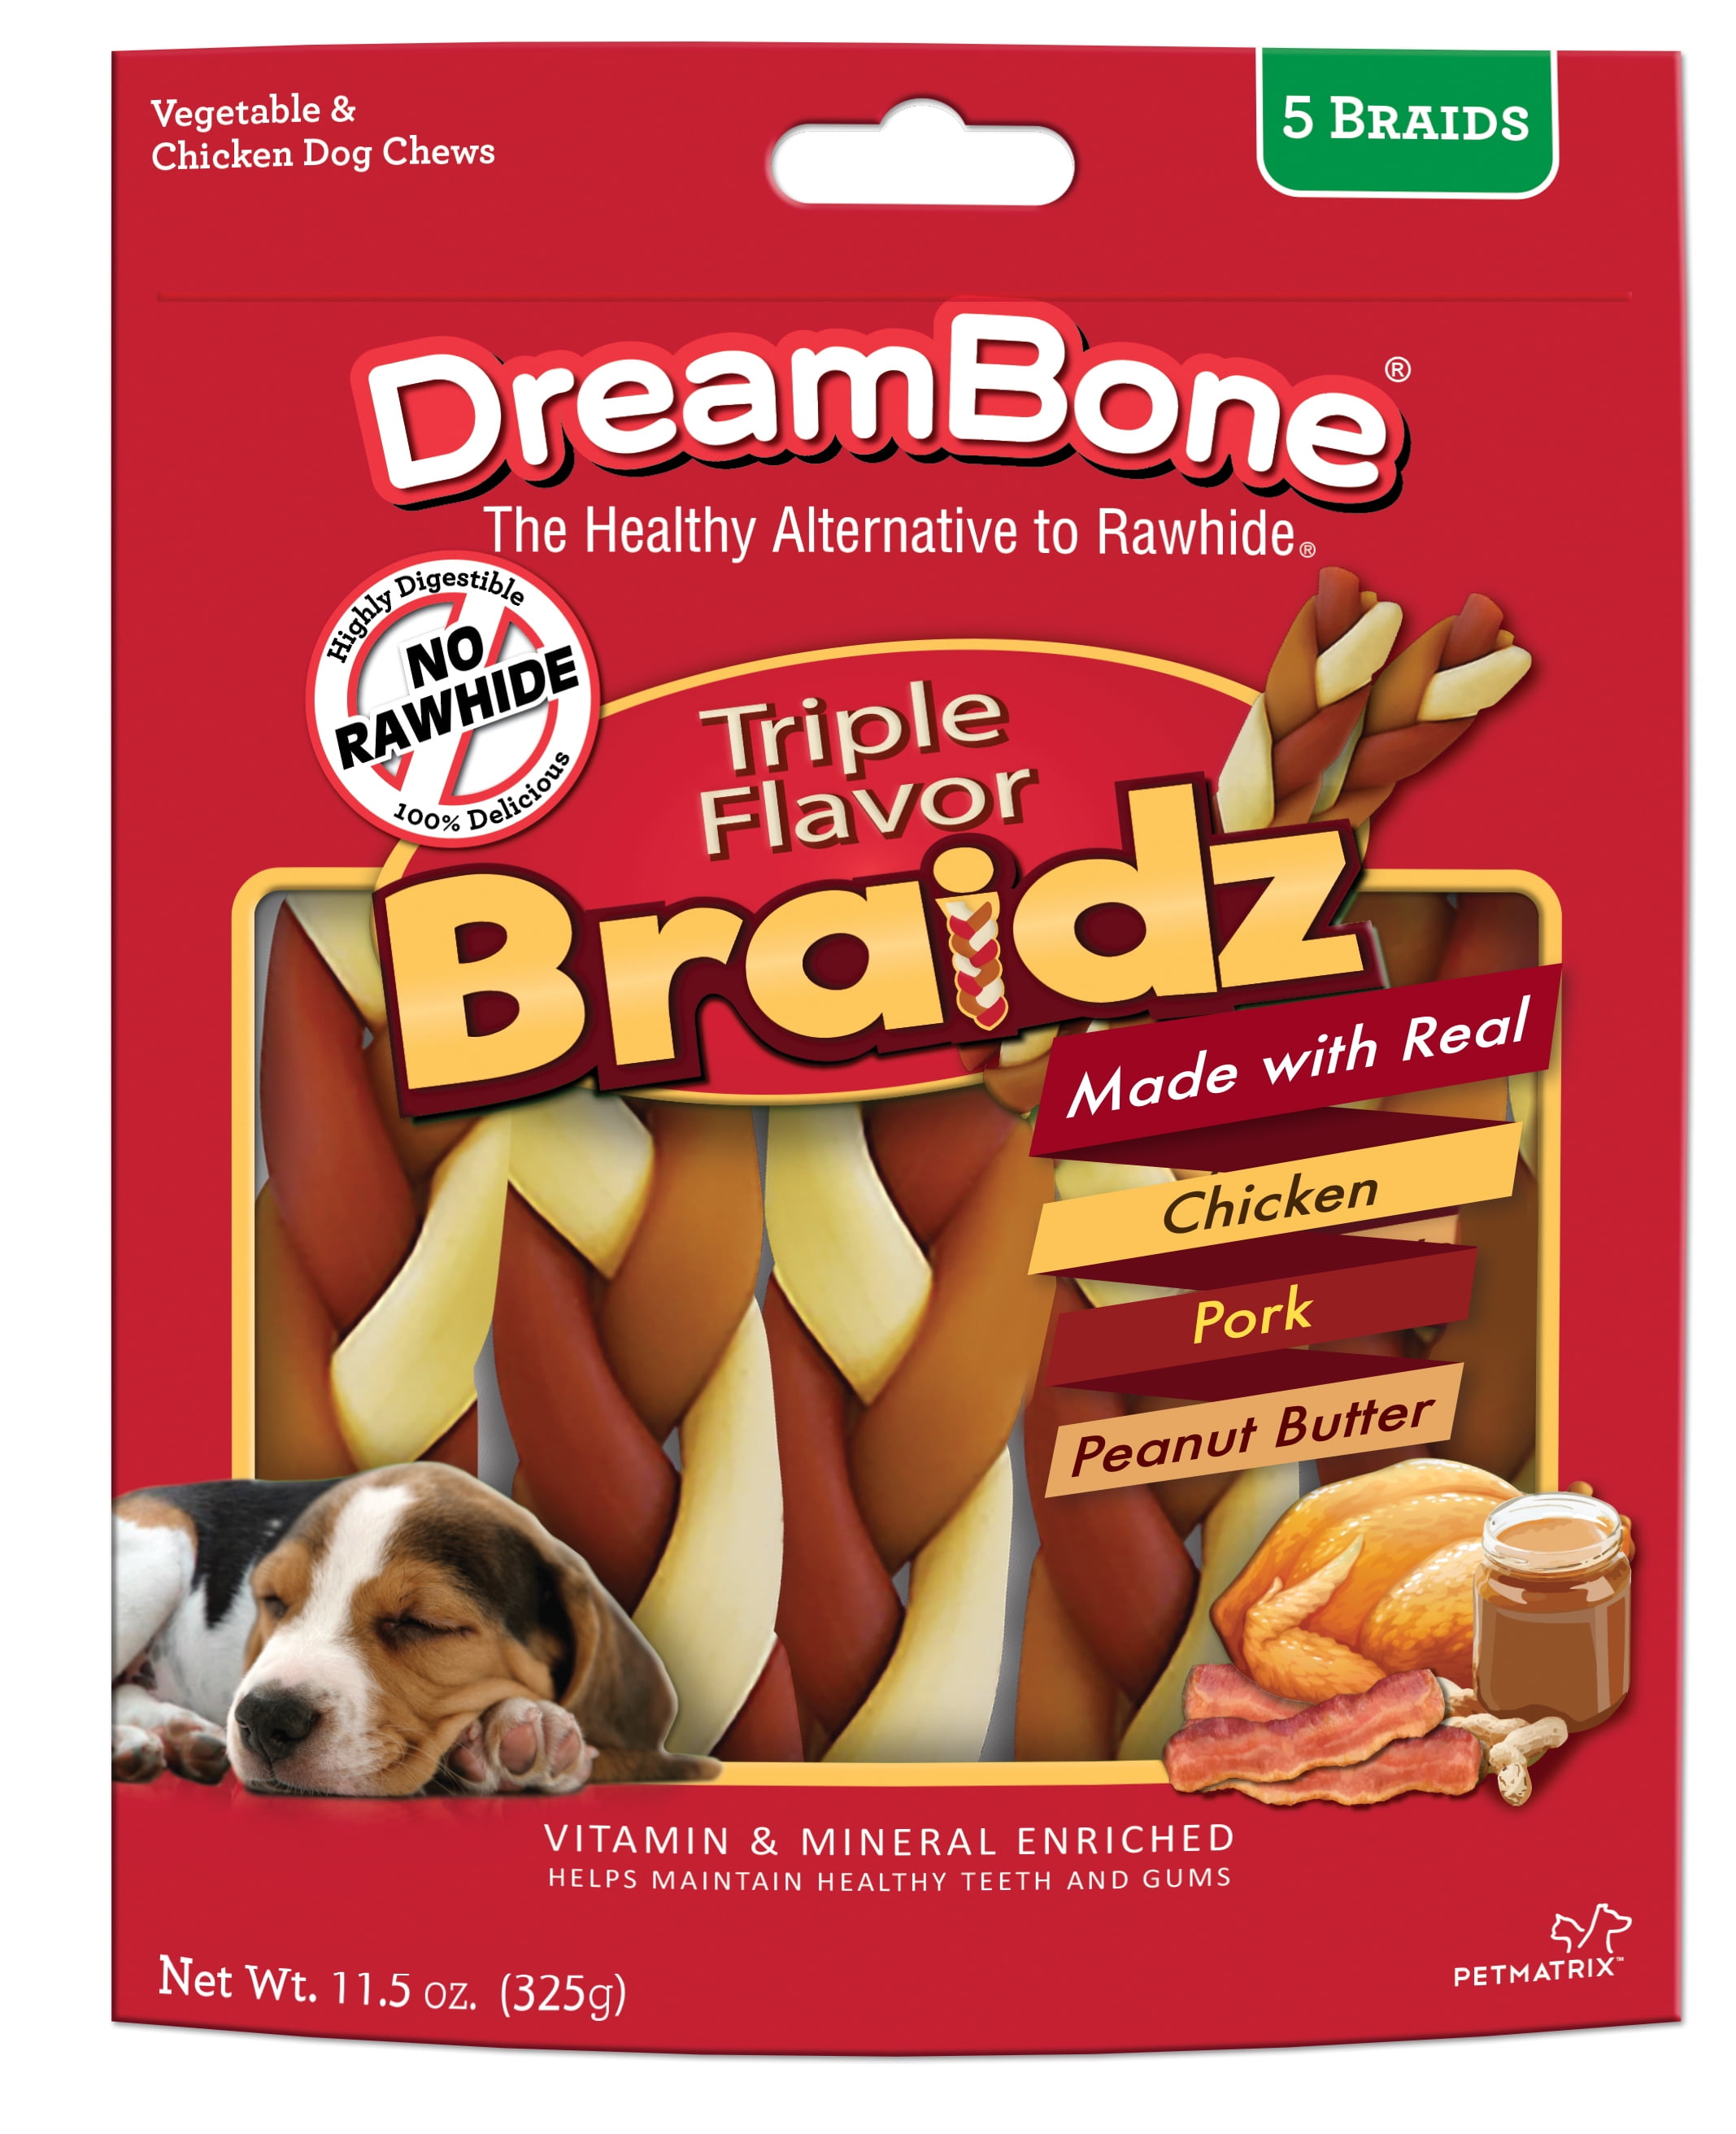 braided rawhide dog chews